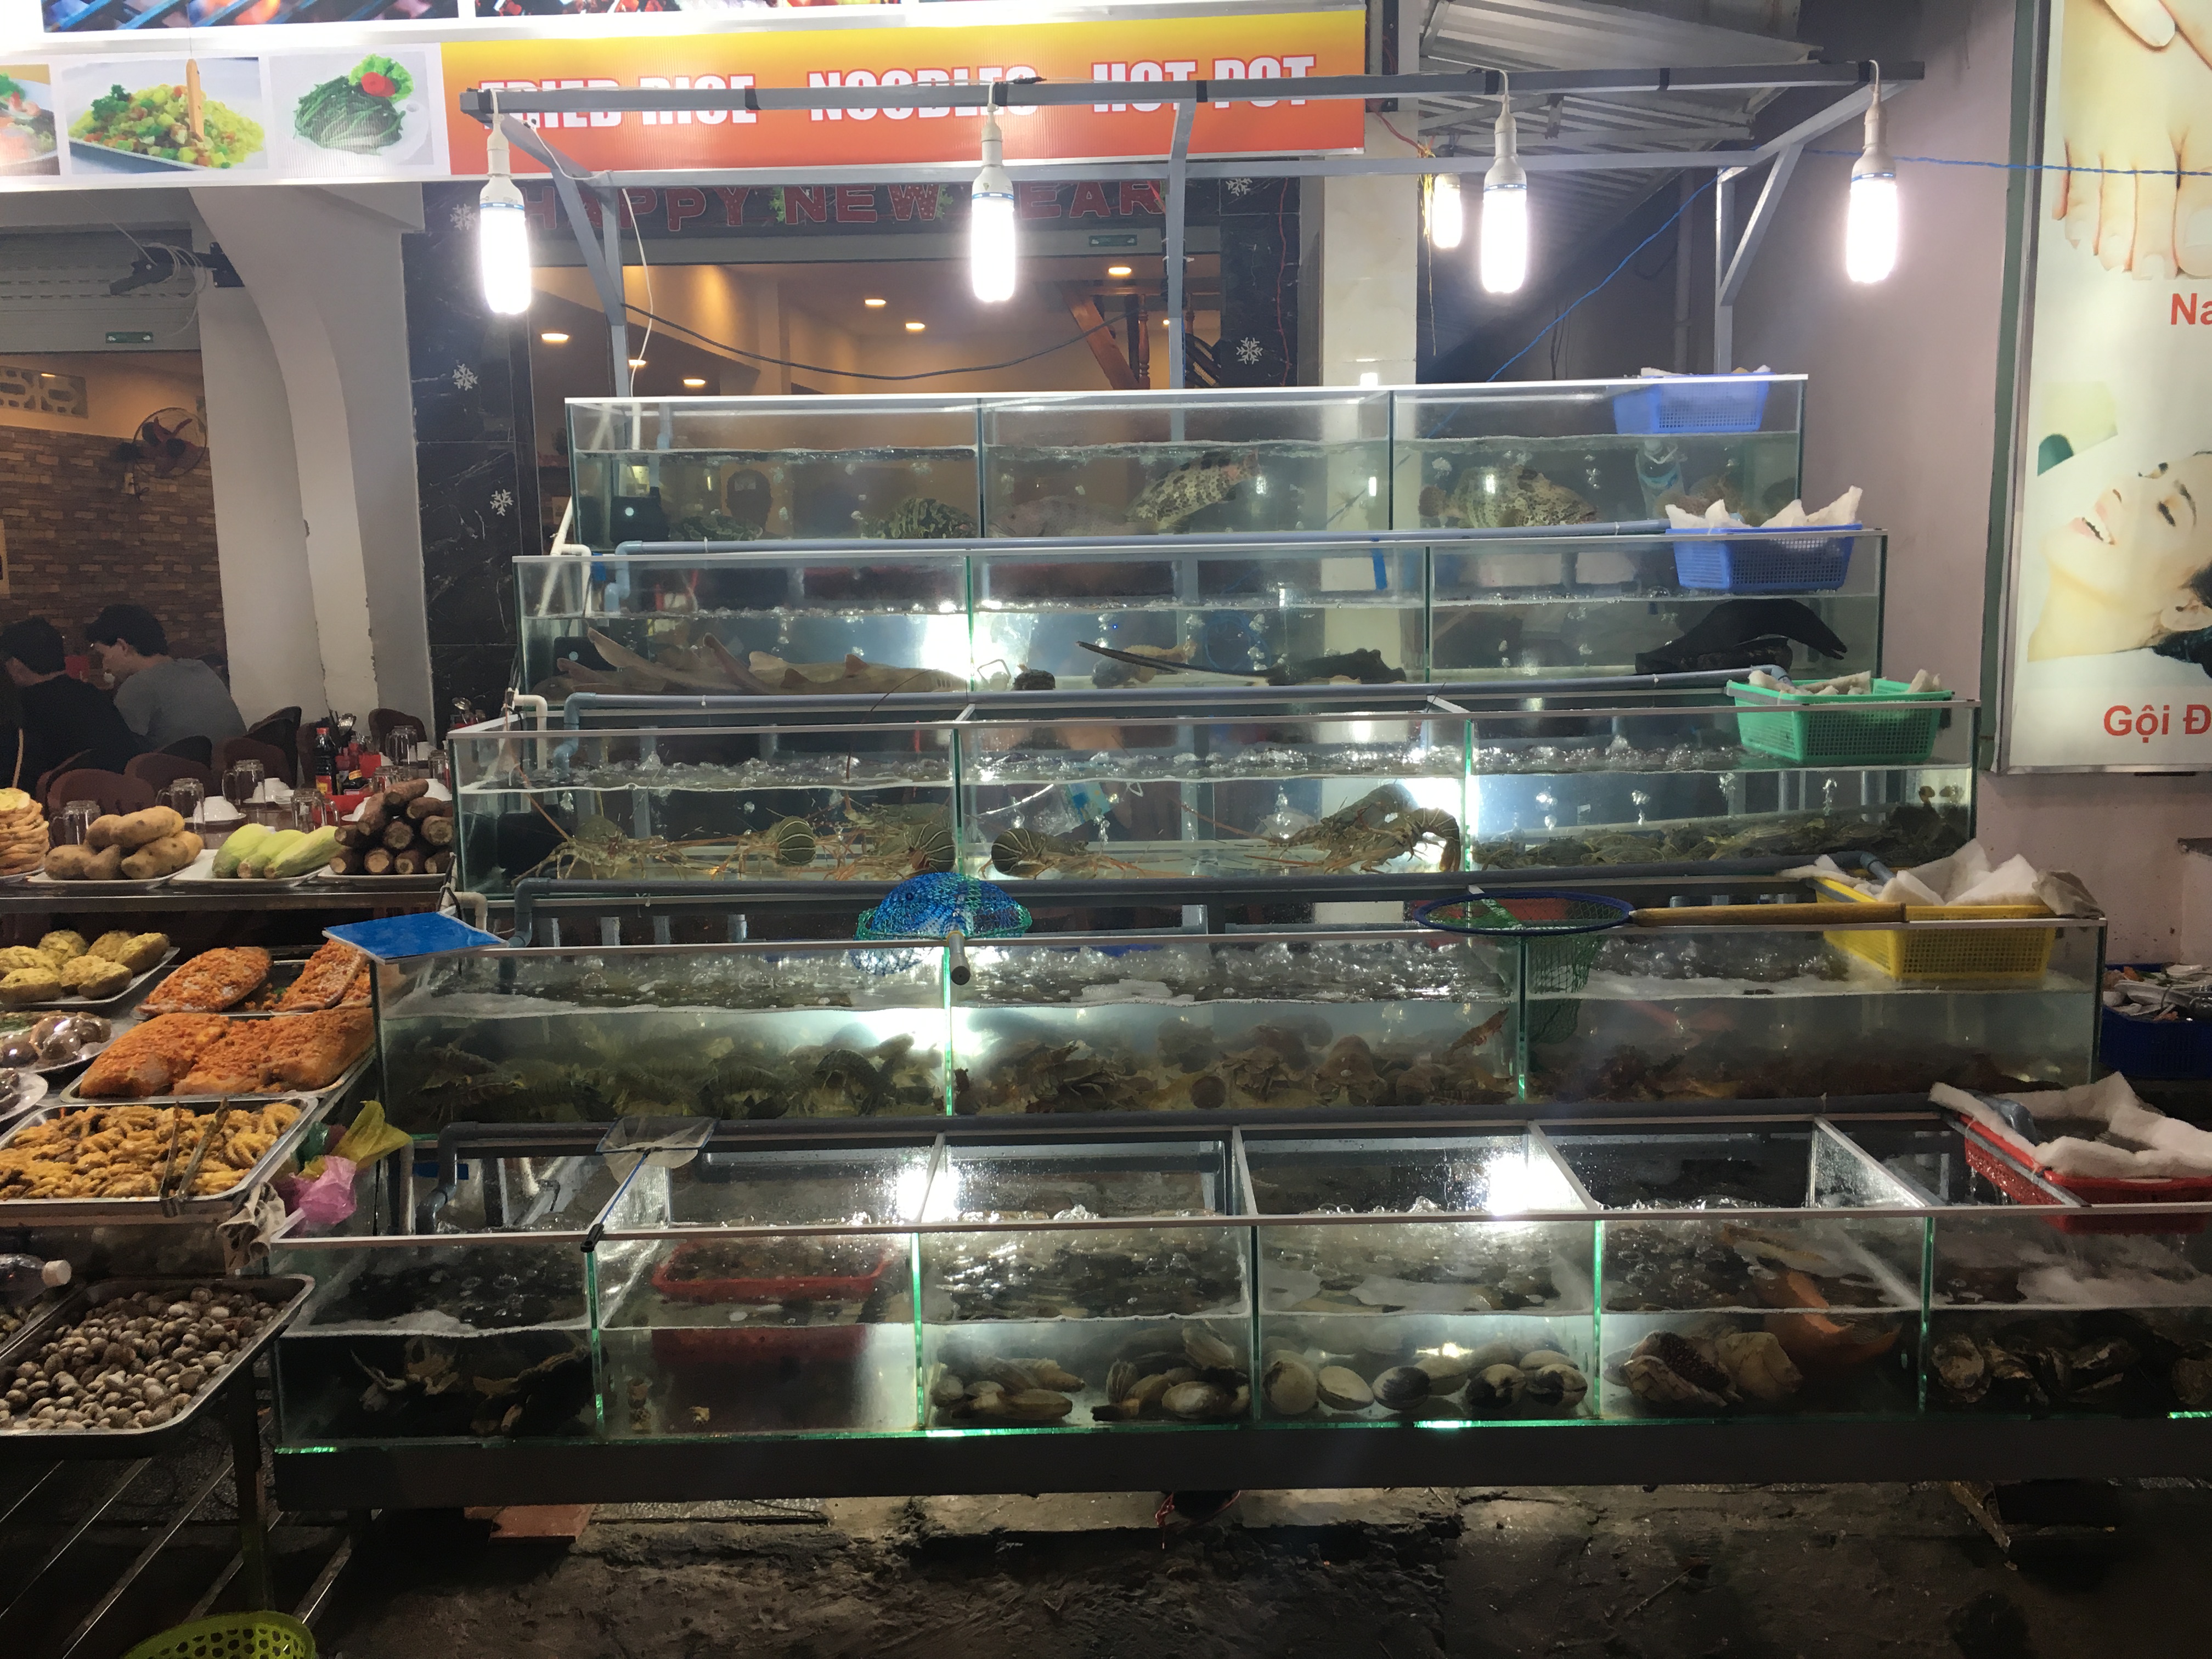 Dinh Cau Night Market in Phu Quoc, Vietnam.